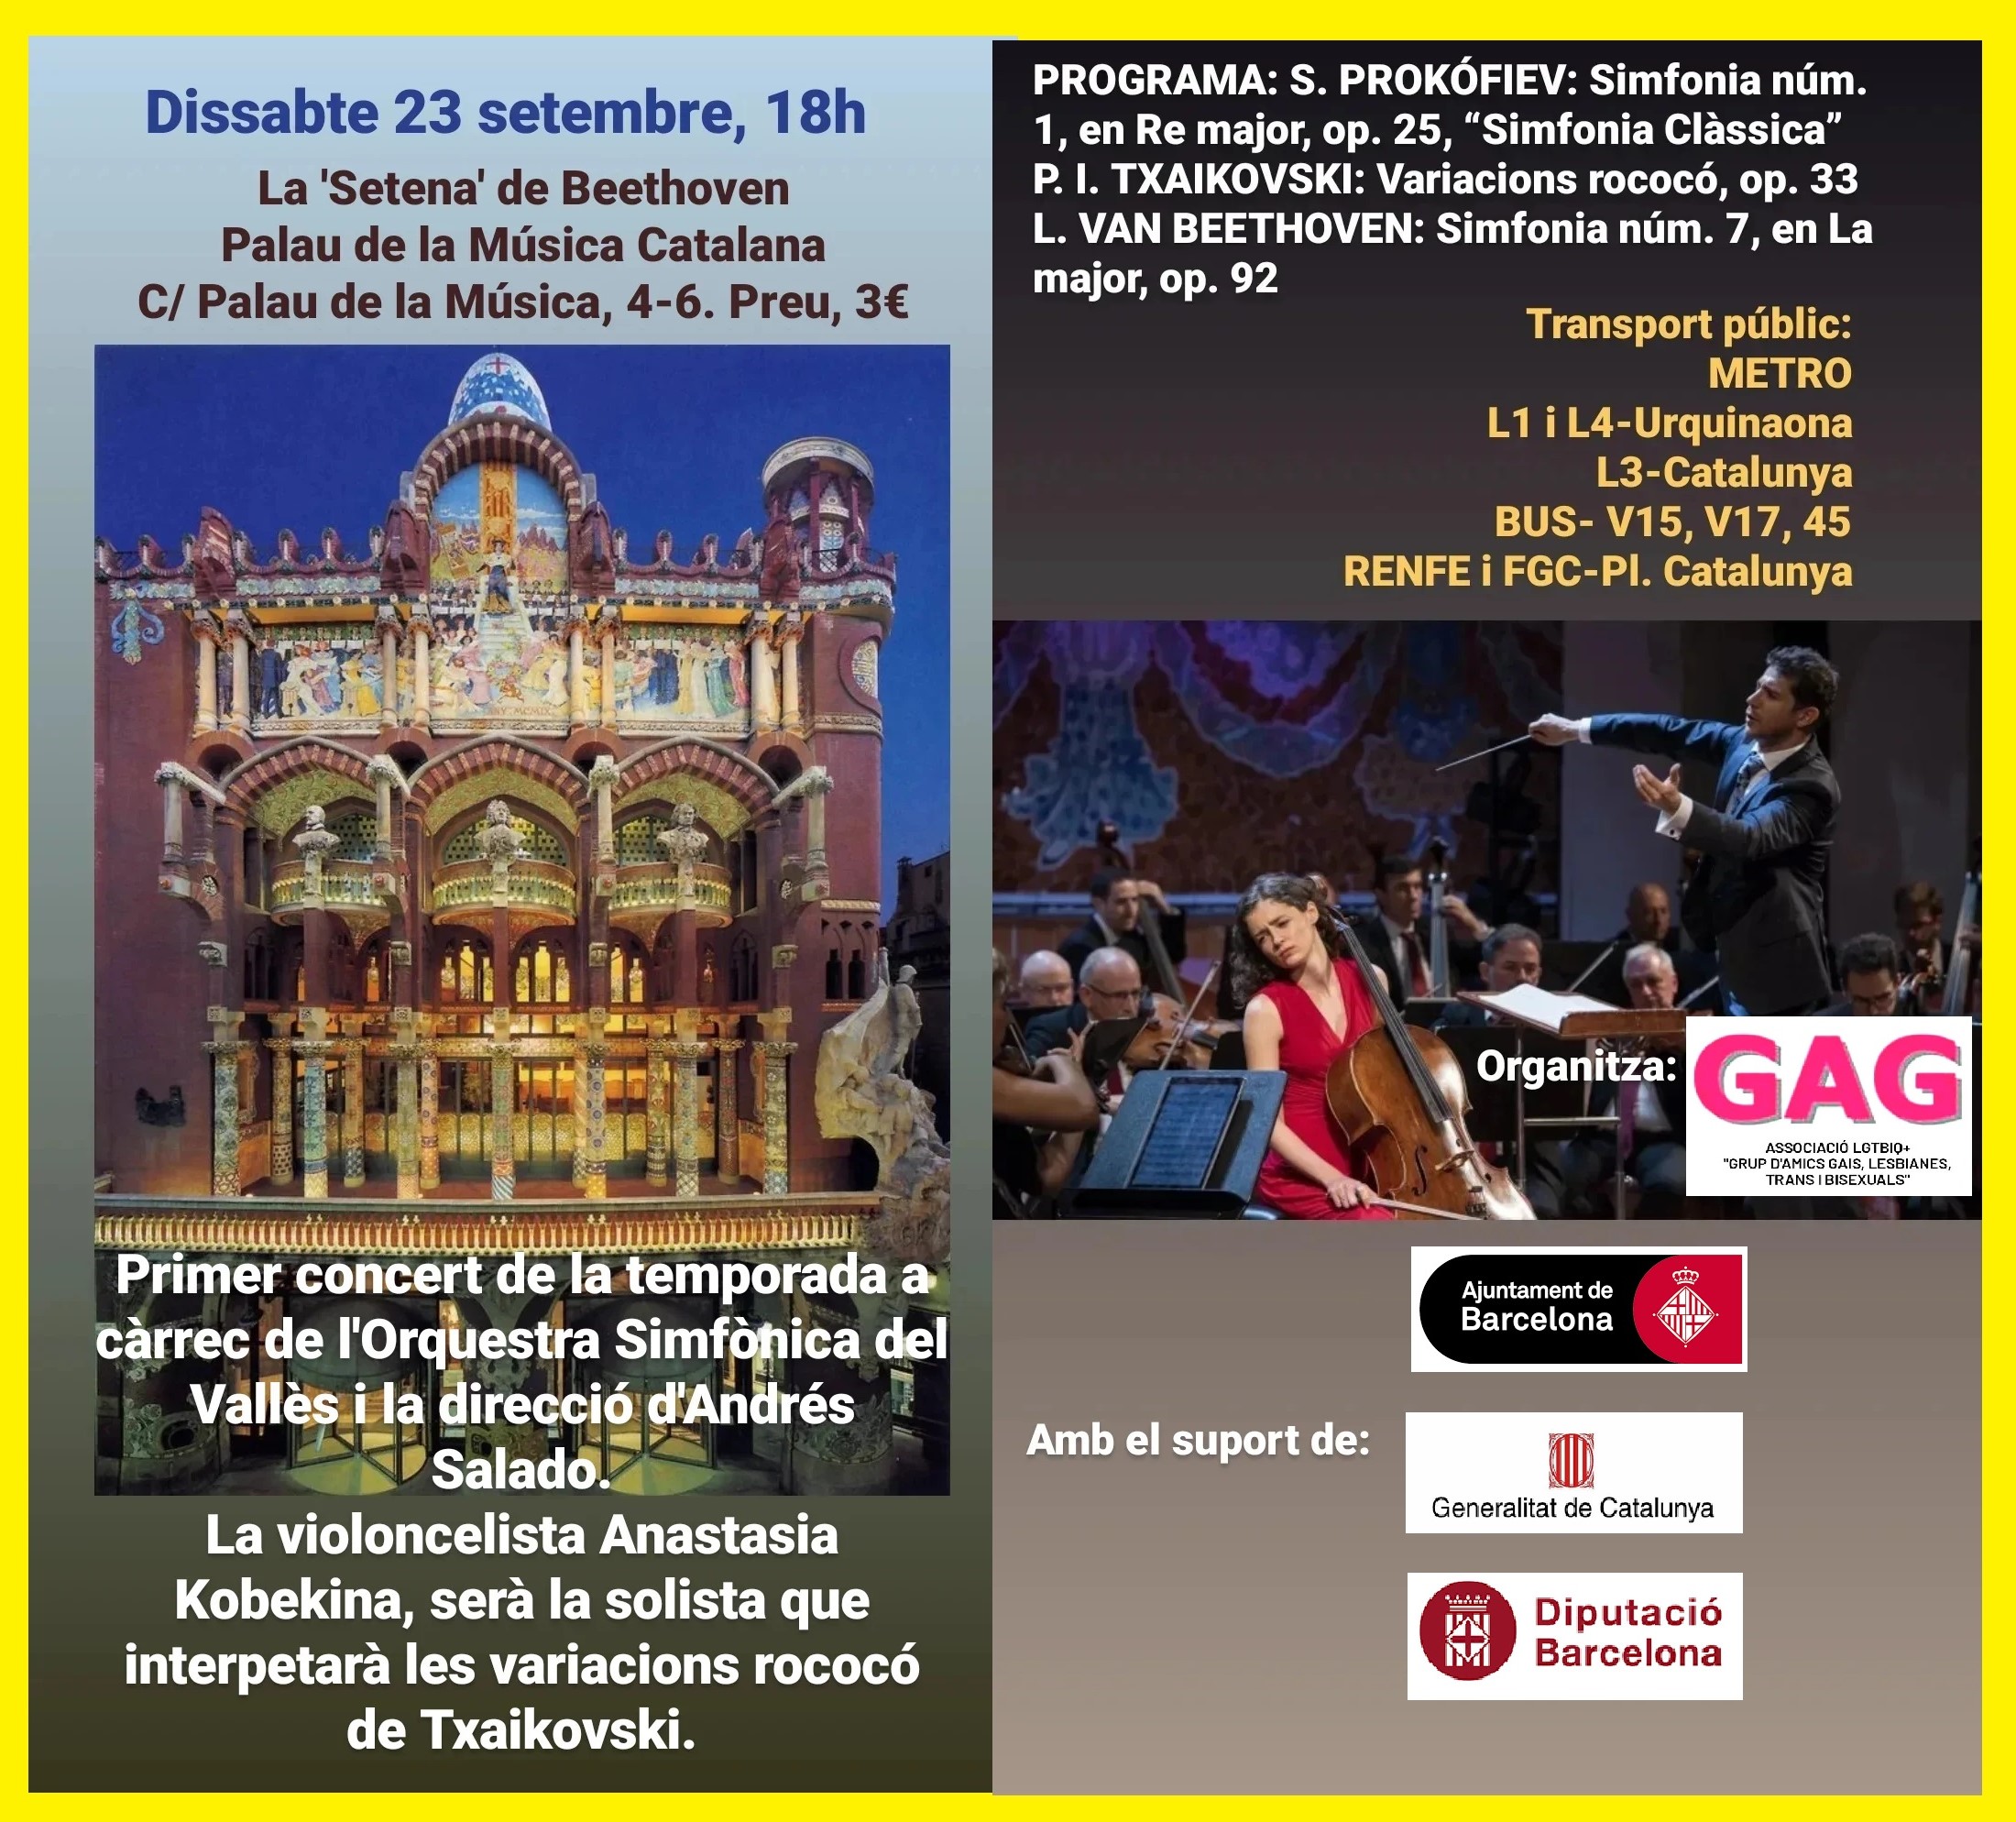 Dissabte, 23 de setembre a les 18h: Concert al Palau de la Musica Catalana